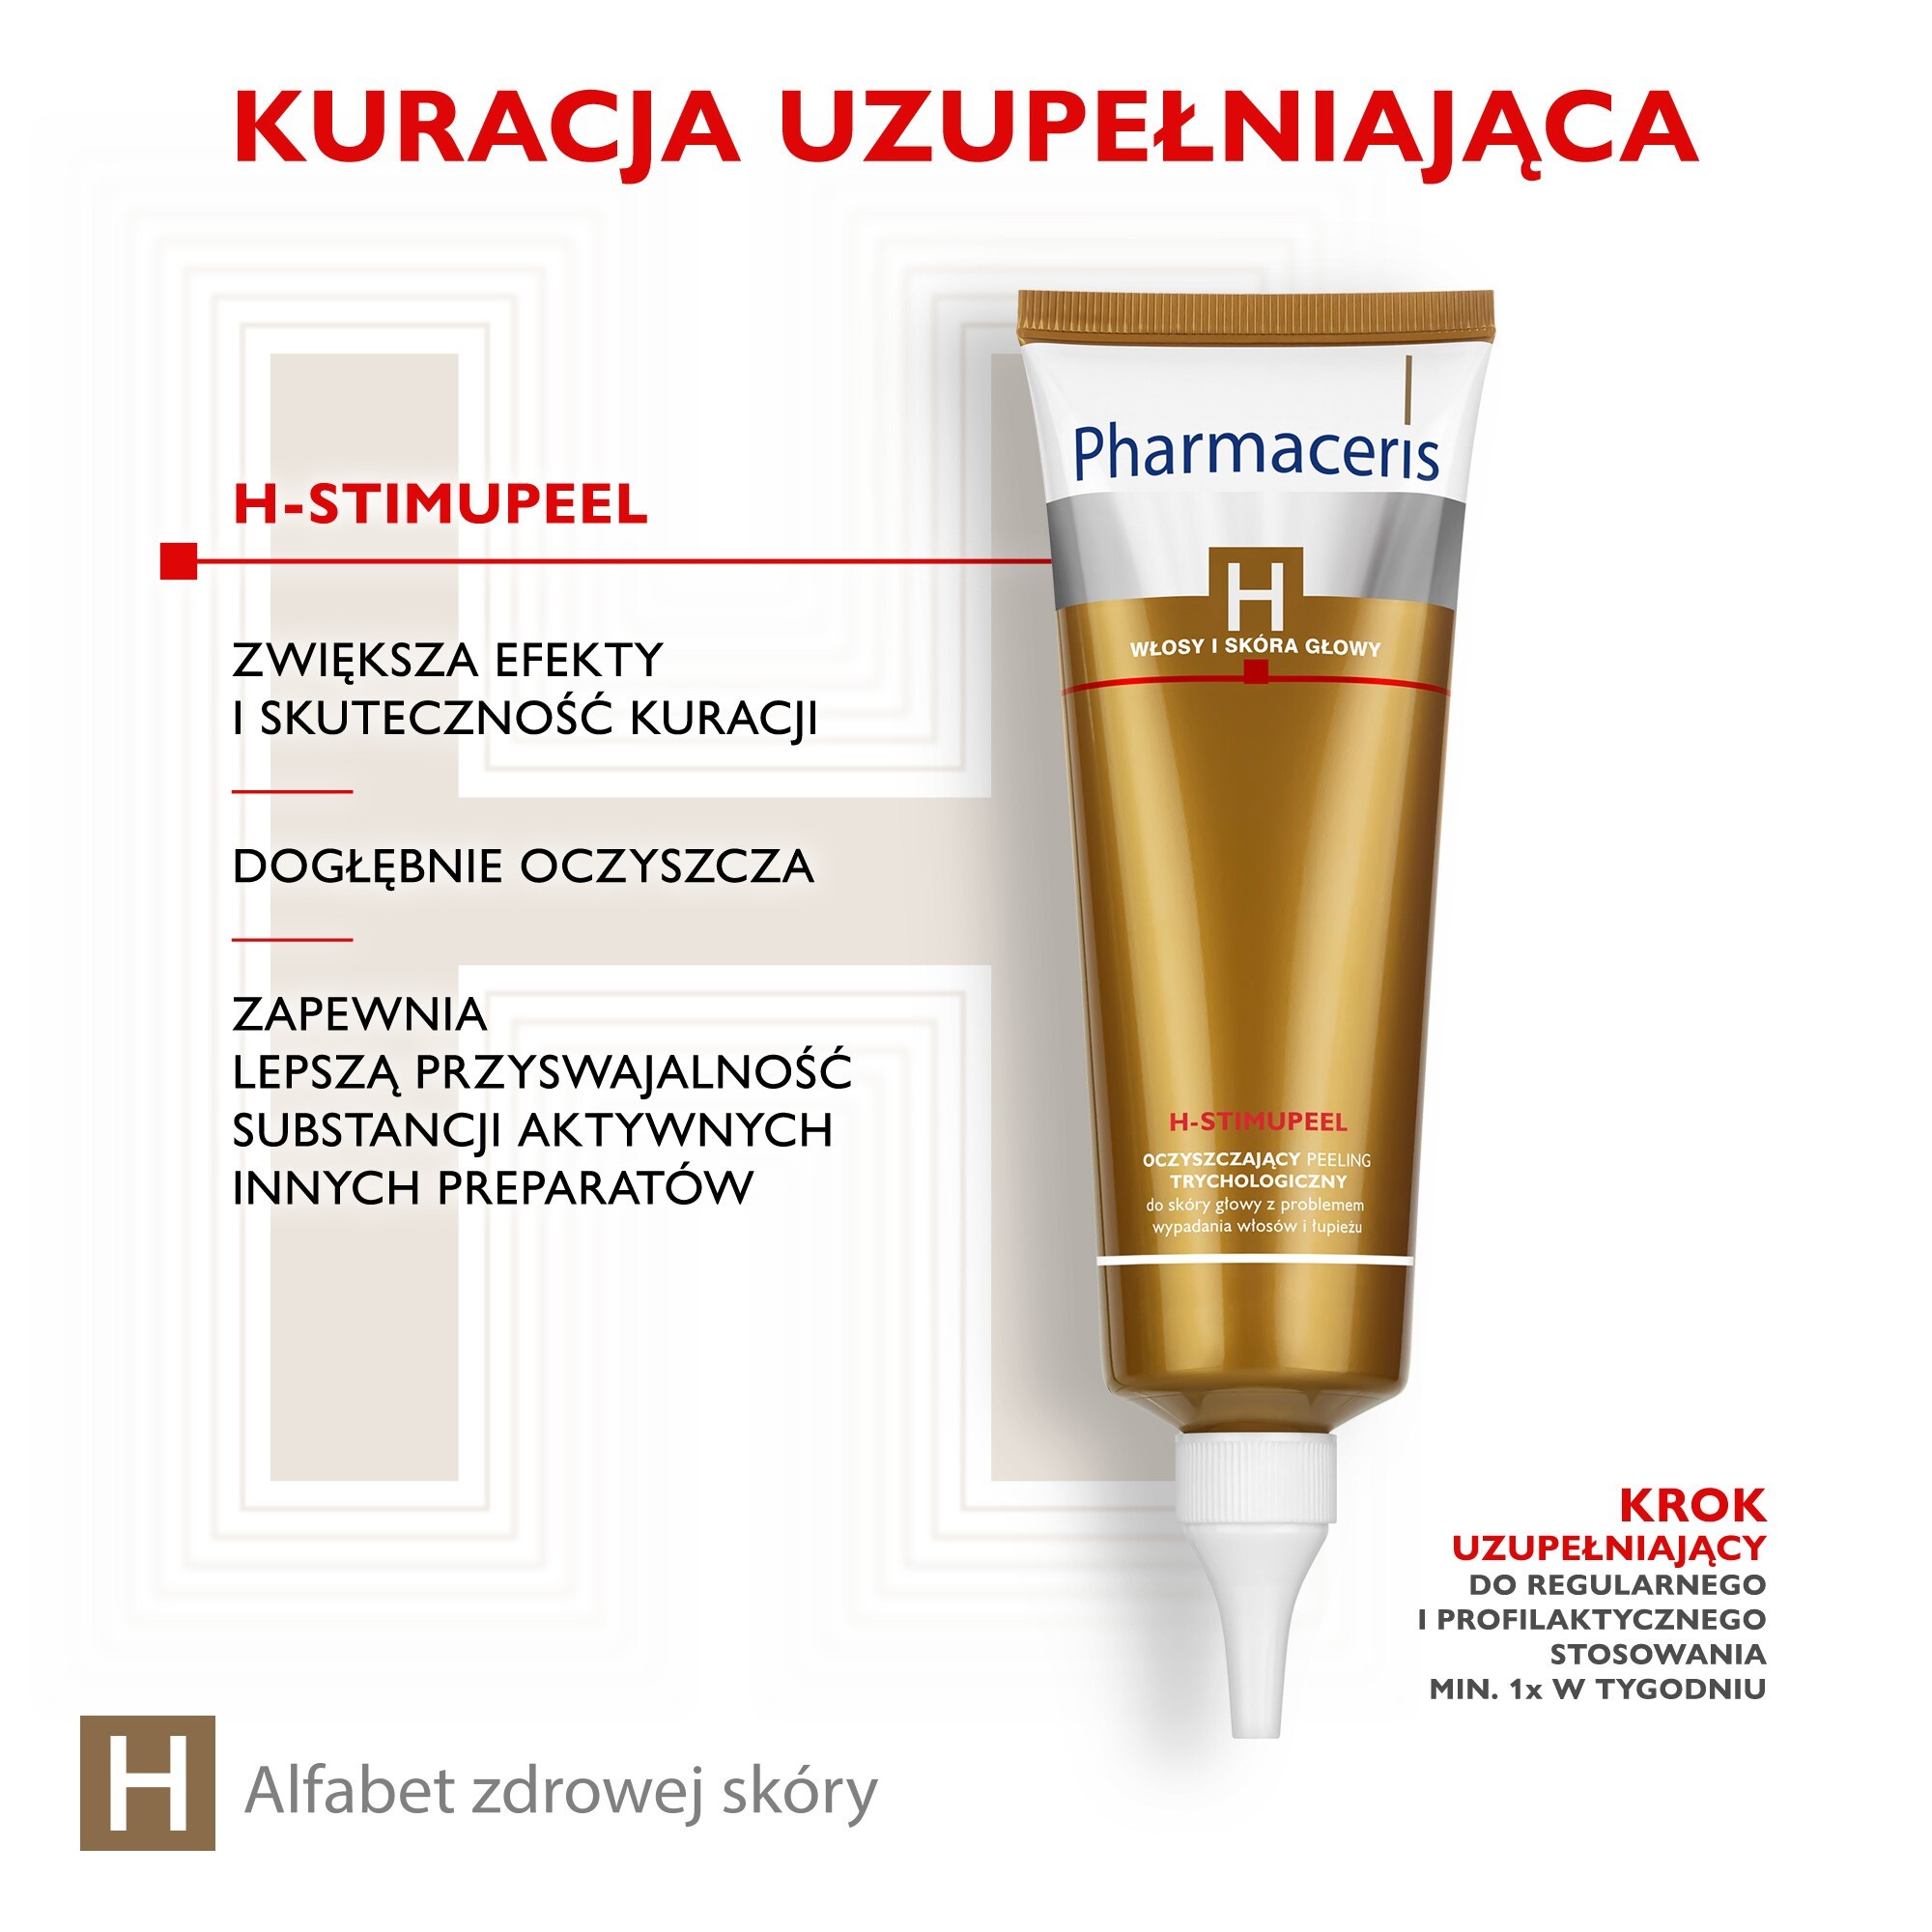 pharmaceris h stimuclaris specjalistyczny szampon stymulujący wzrost włosów